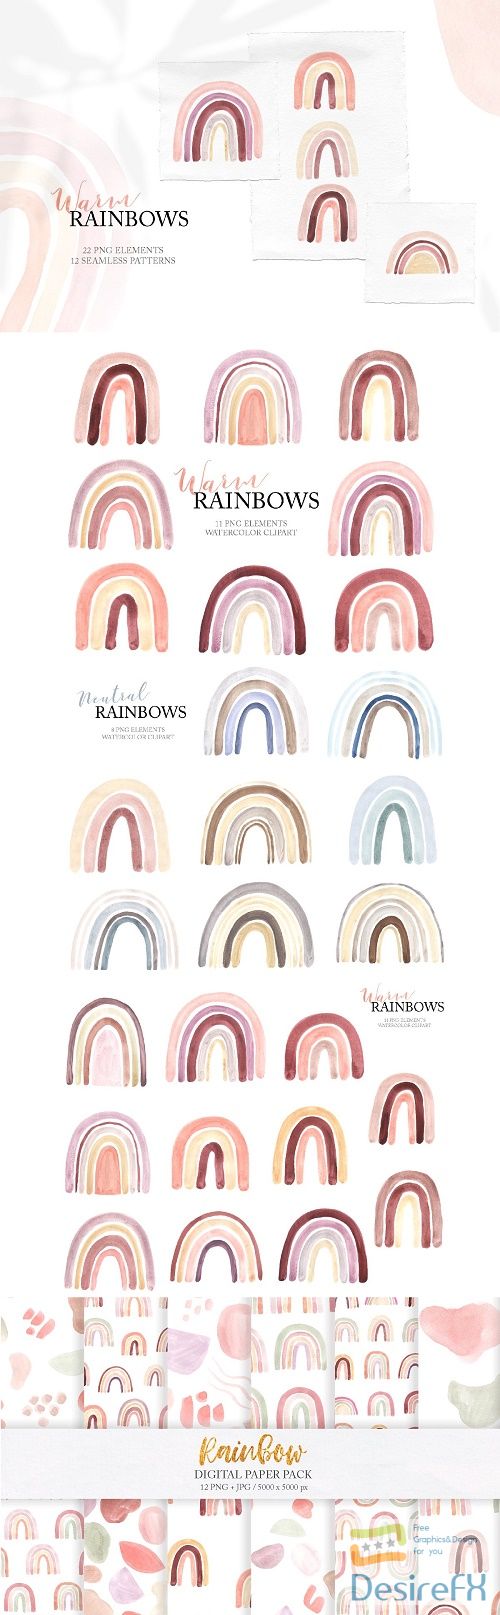 Watercolor Boho Rainbows Set - 4659679